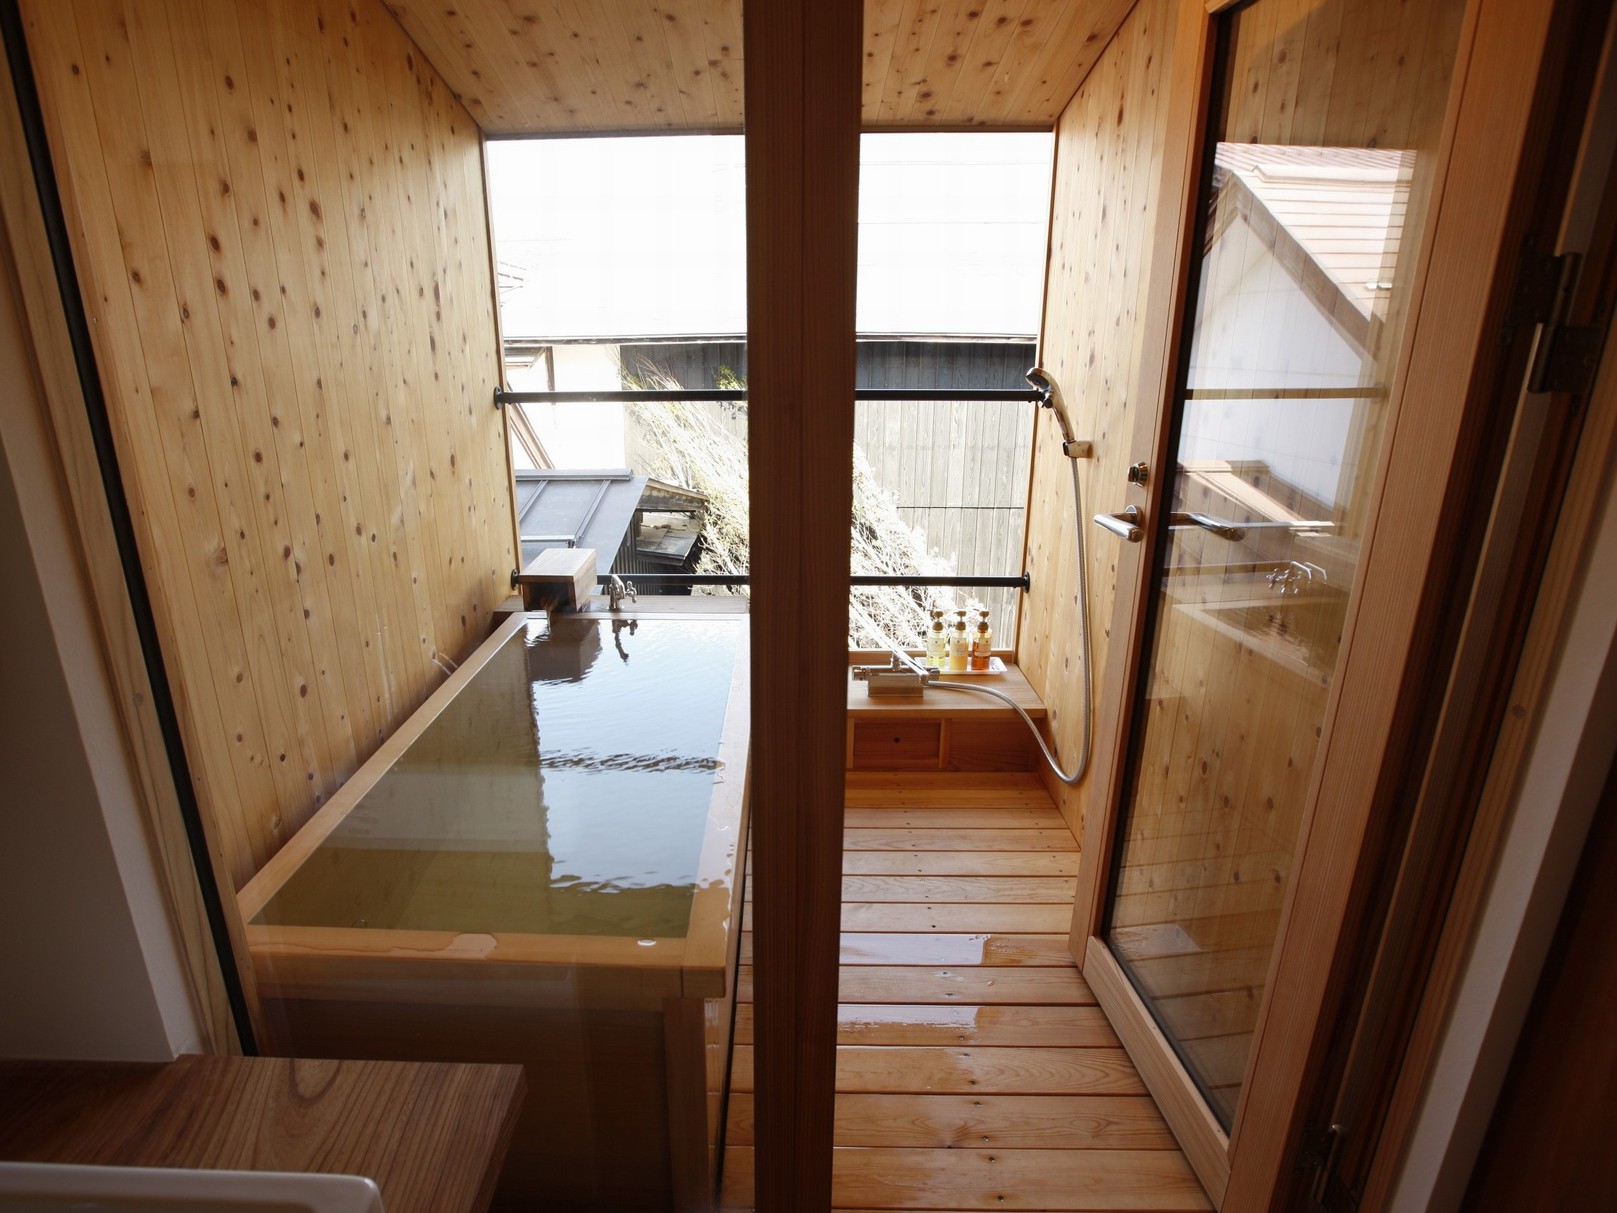 【KURA05】2階はヒノキ風呂で源泉かけ流しの温泉と眺めを独占